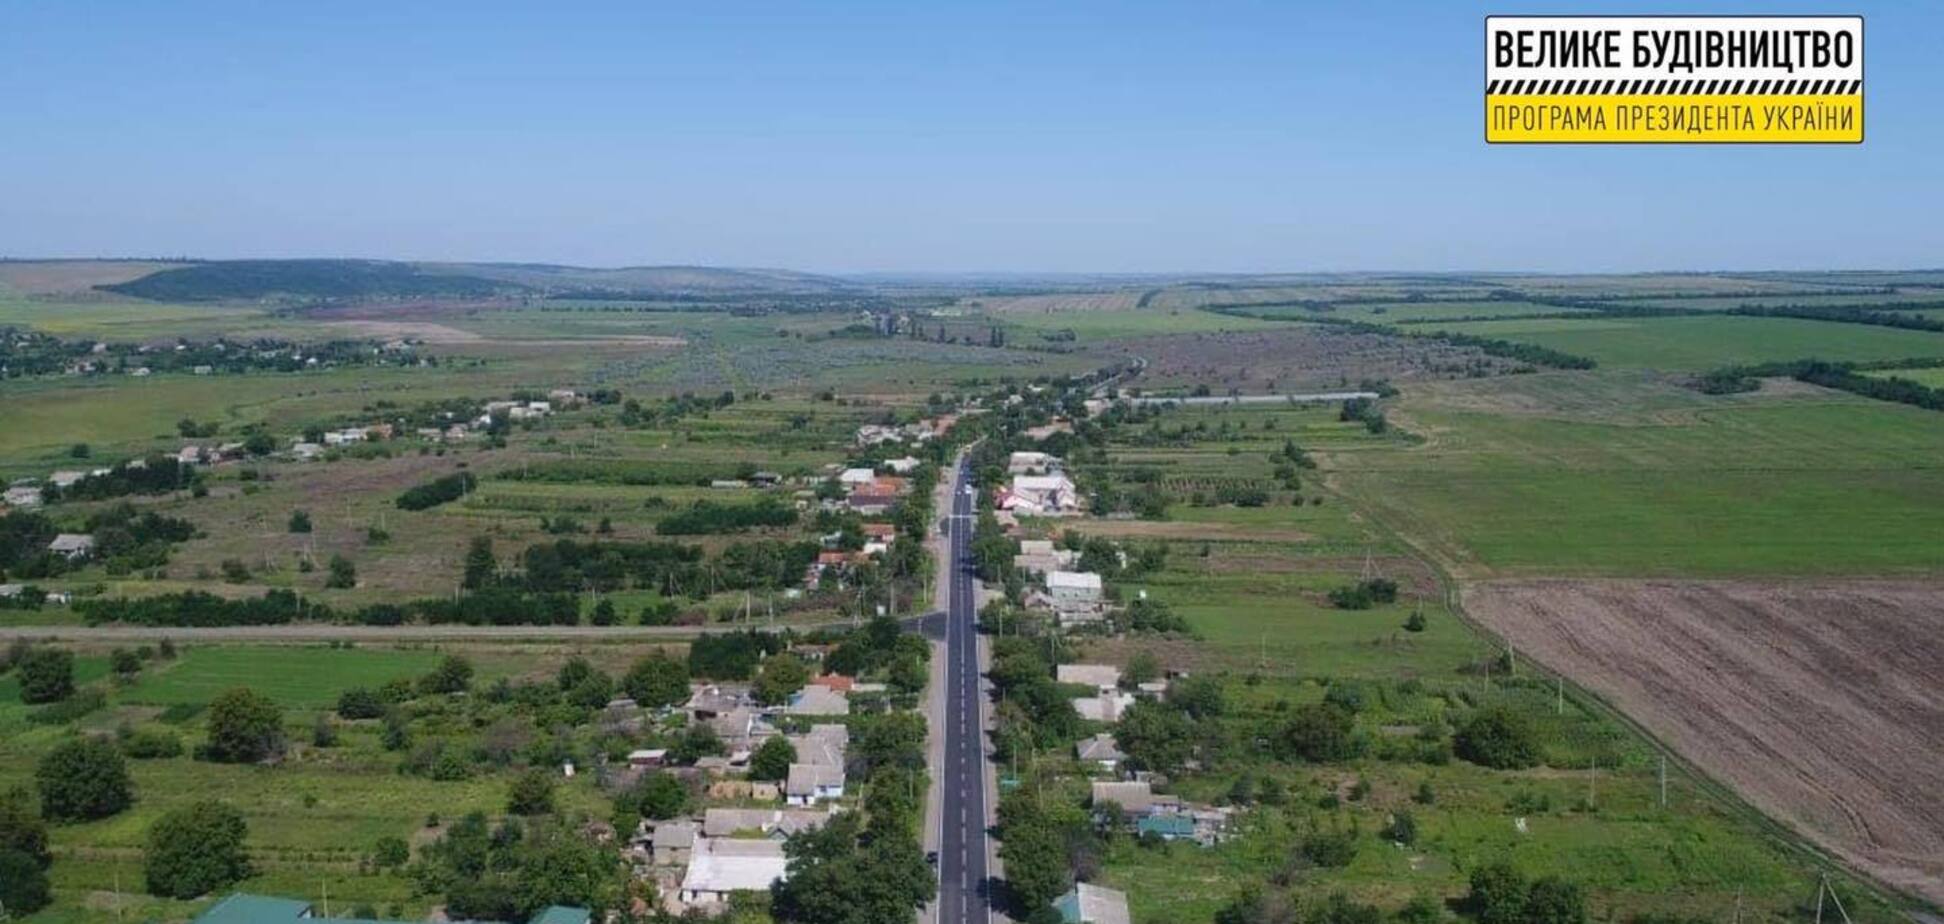 'Большая стройка': 'Автомагистраль-Юг' восстановила 9-километровый участок трассы Р-33 в Одесской области